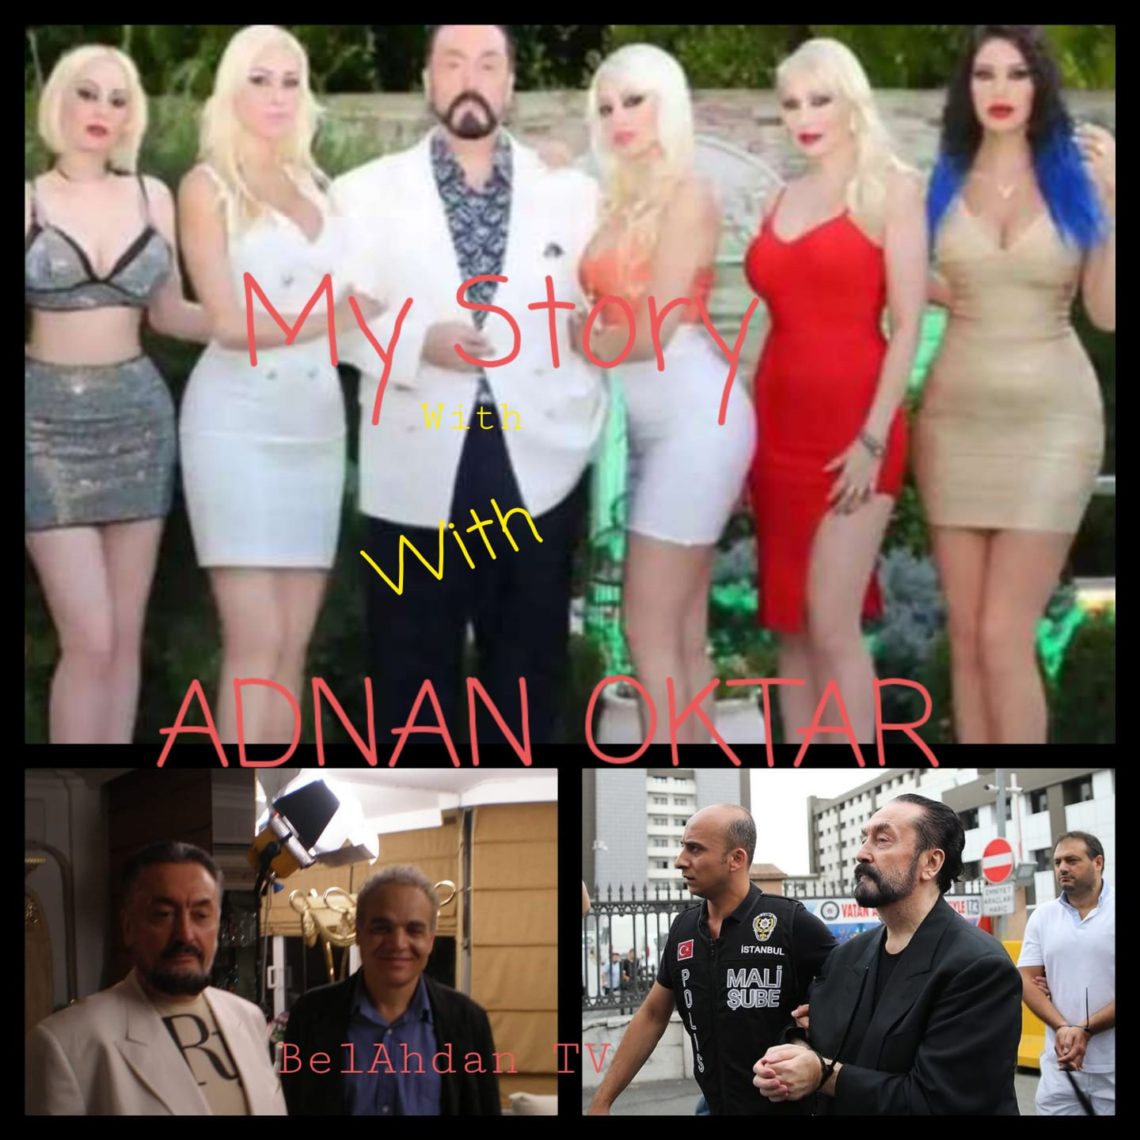 Adnan Oktar Seks Xxx - MY STORY WITH THE ARMANI PREACHER ADNAN OKTAR â€“ AhMedia